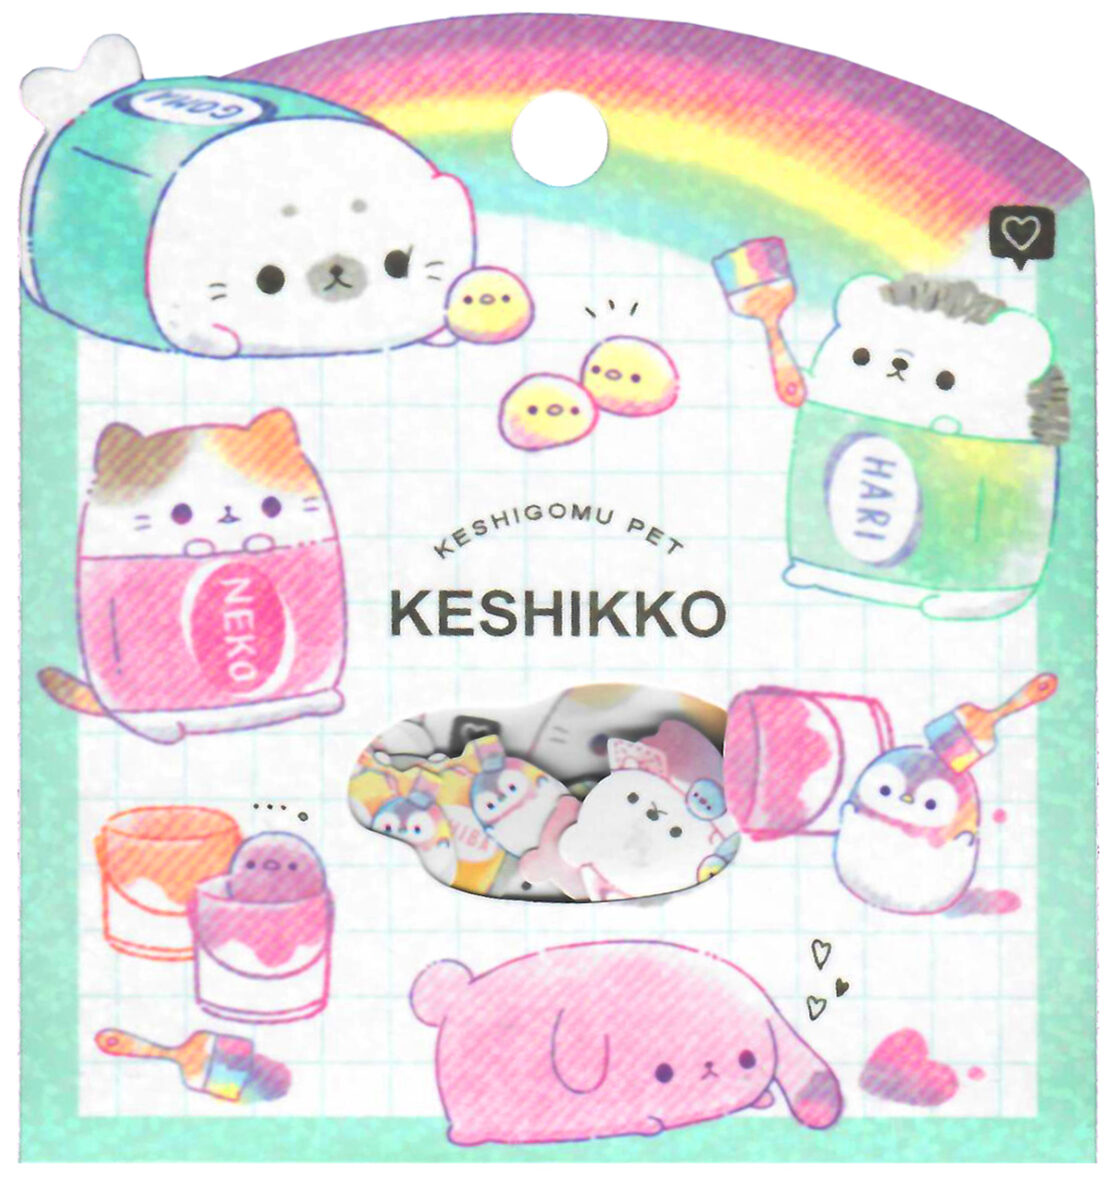 Crux Keshigomu Pet Die-Cut Sticker Sack